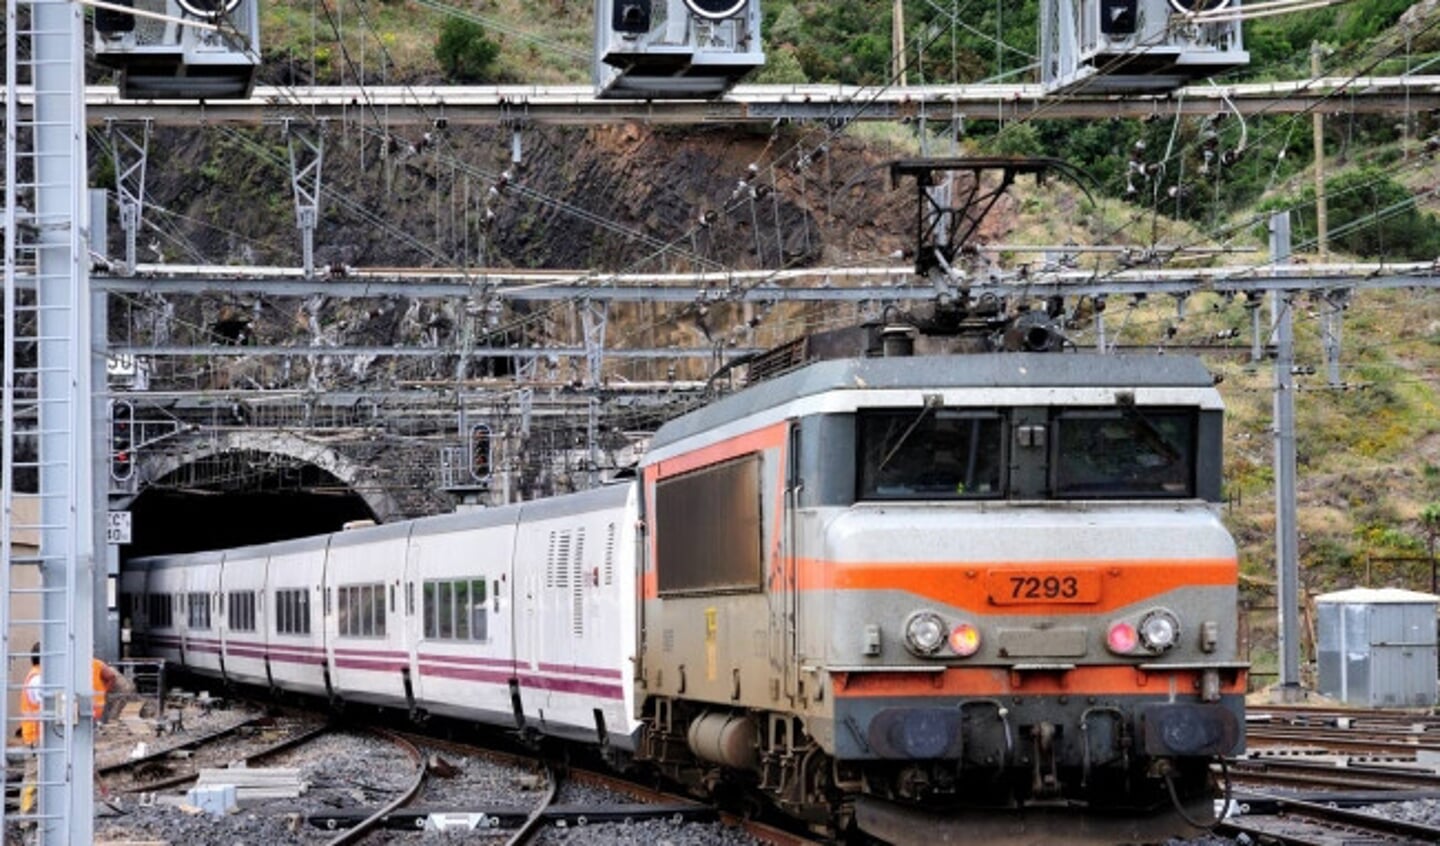  Een Intercité naar Port Bou in Spanje vertrekt uit het Franse grensstation Cerbère. De trein bestaat uit Spaans Talgo-materieel en wordt geduwd door een Franse locomotief.